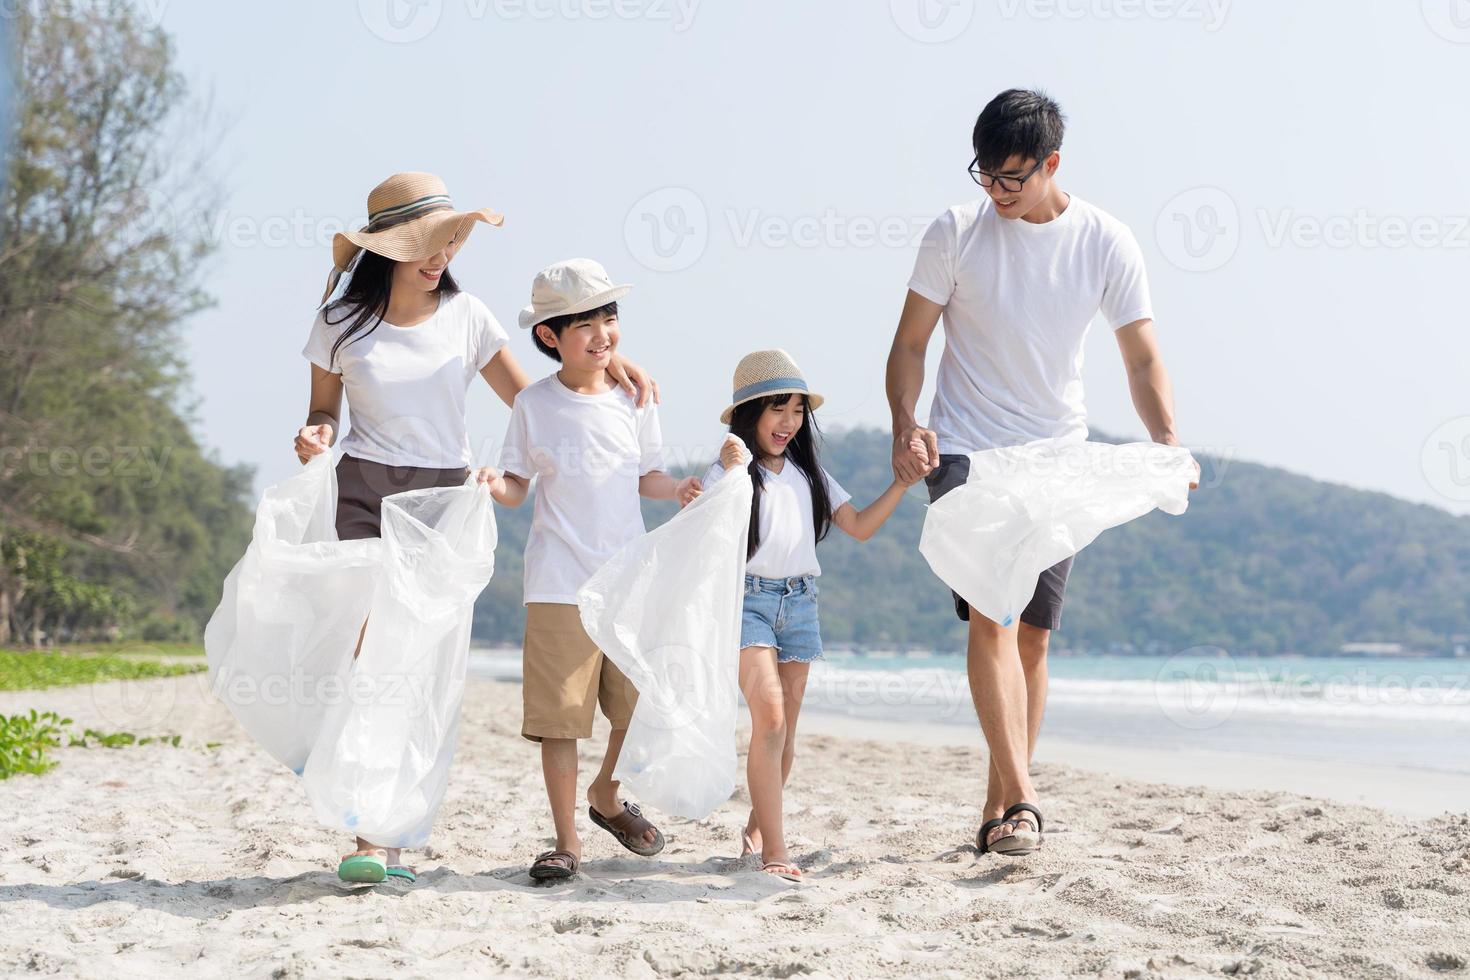 voluntario familiar asiático recogiendo una botella de plástico en una playa con mar para proteger el medio ambiente foto